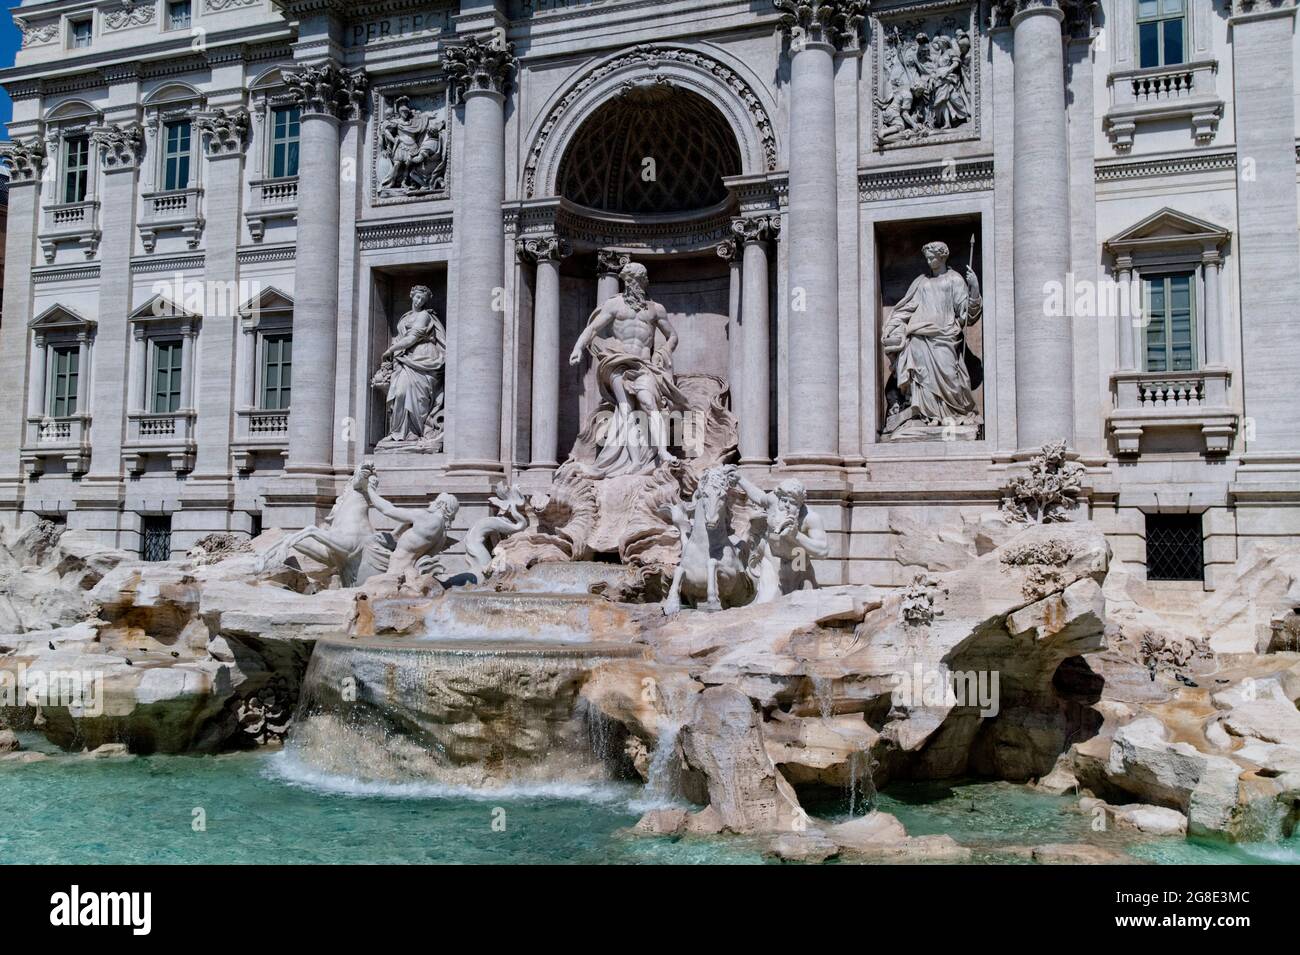 Europa - Italia, capitale Roma: Una vista dettagliata della Fontana di Trevi, uno dei luoghi più popolari di Roma, migliaia di persone visitano la f Foto Stock